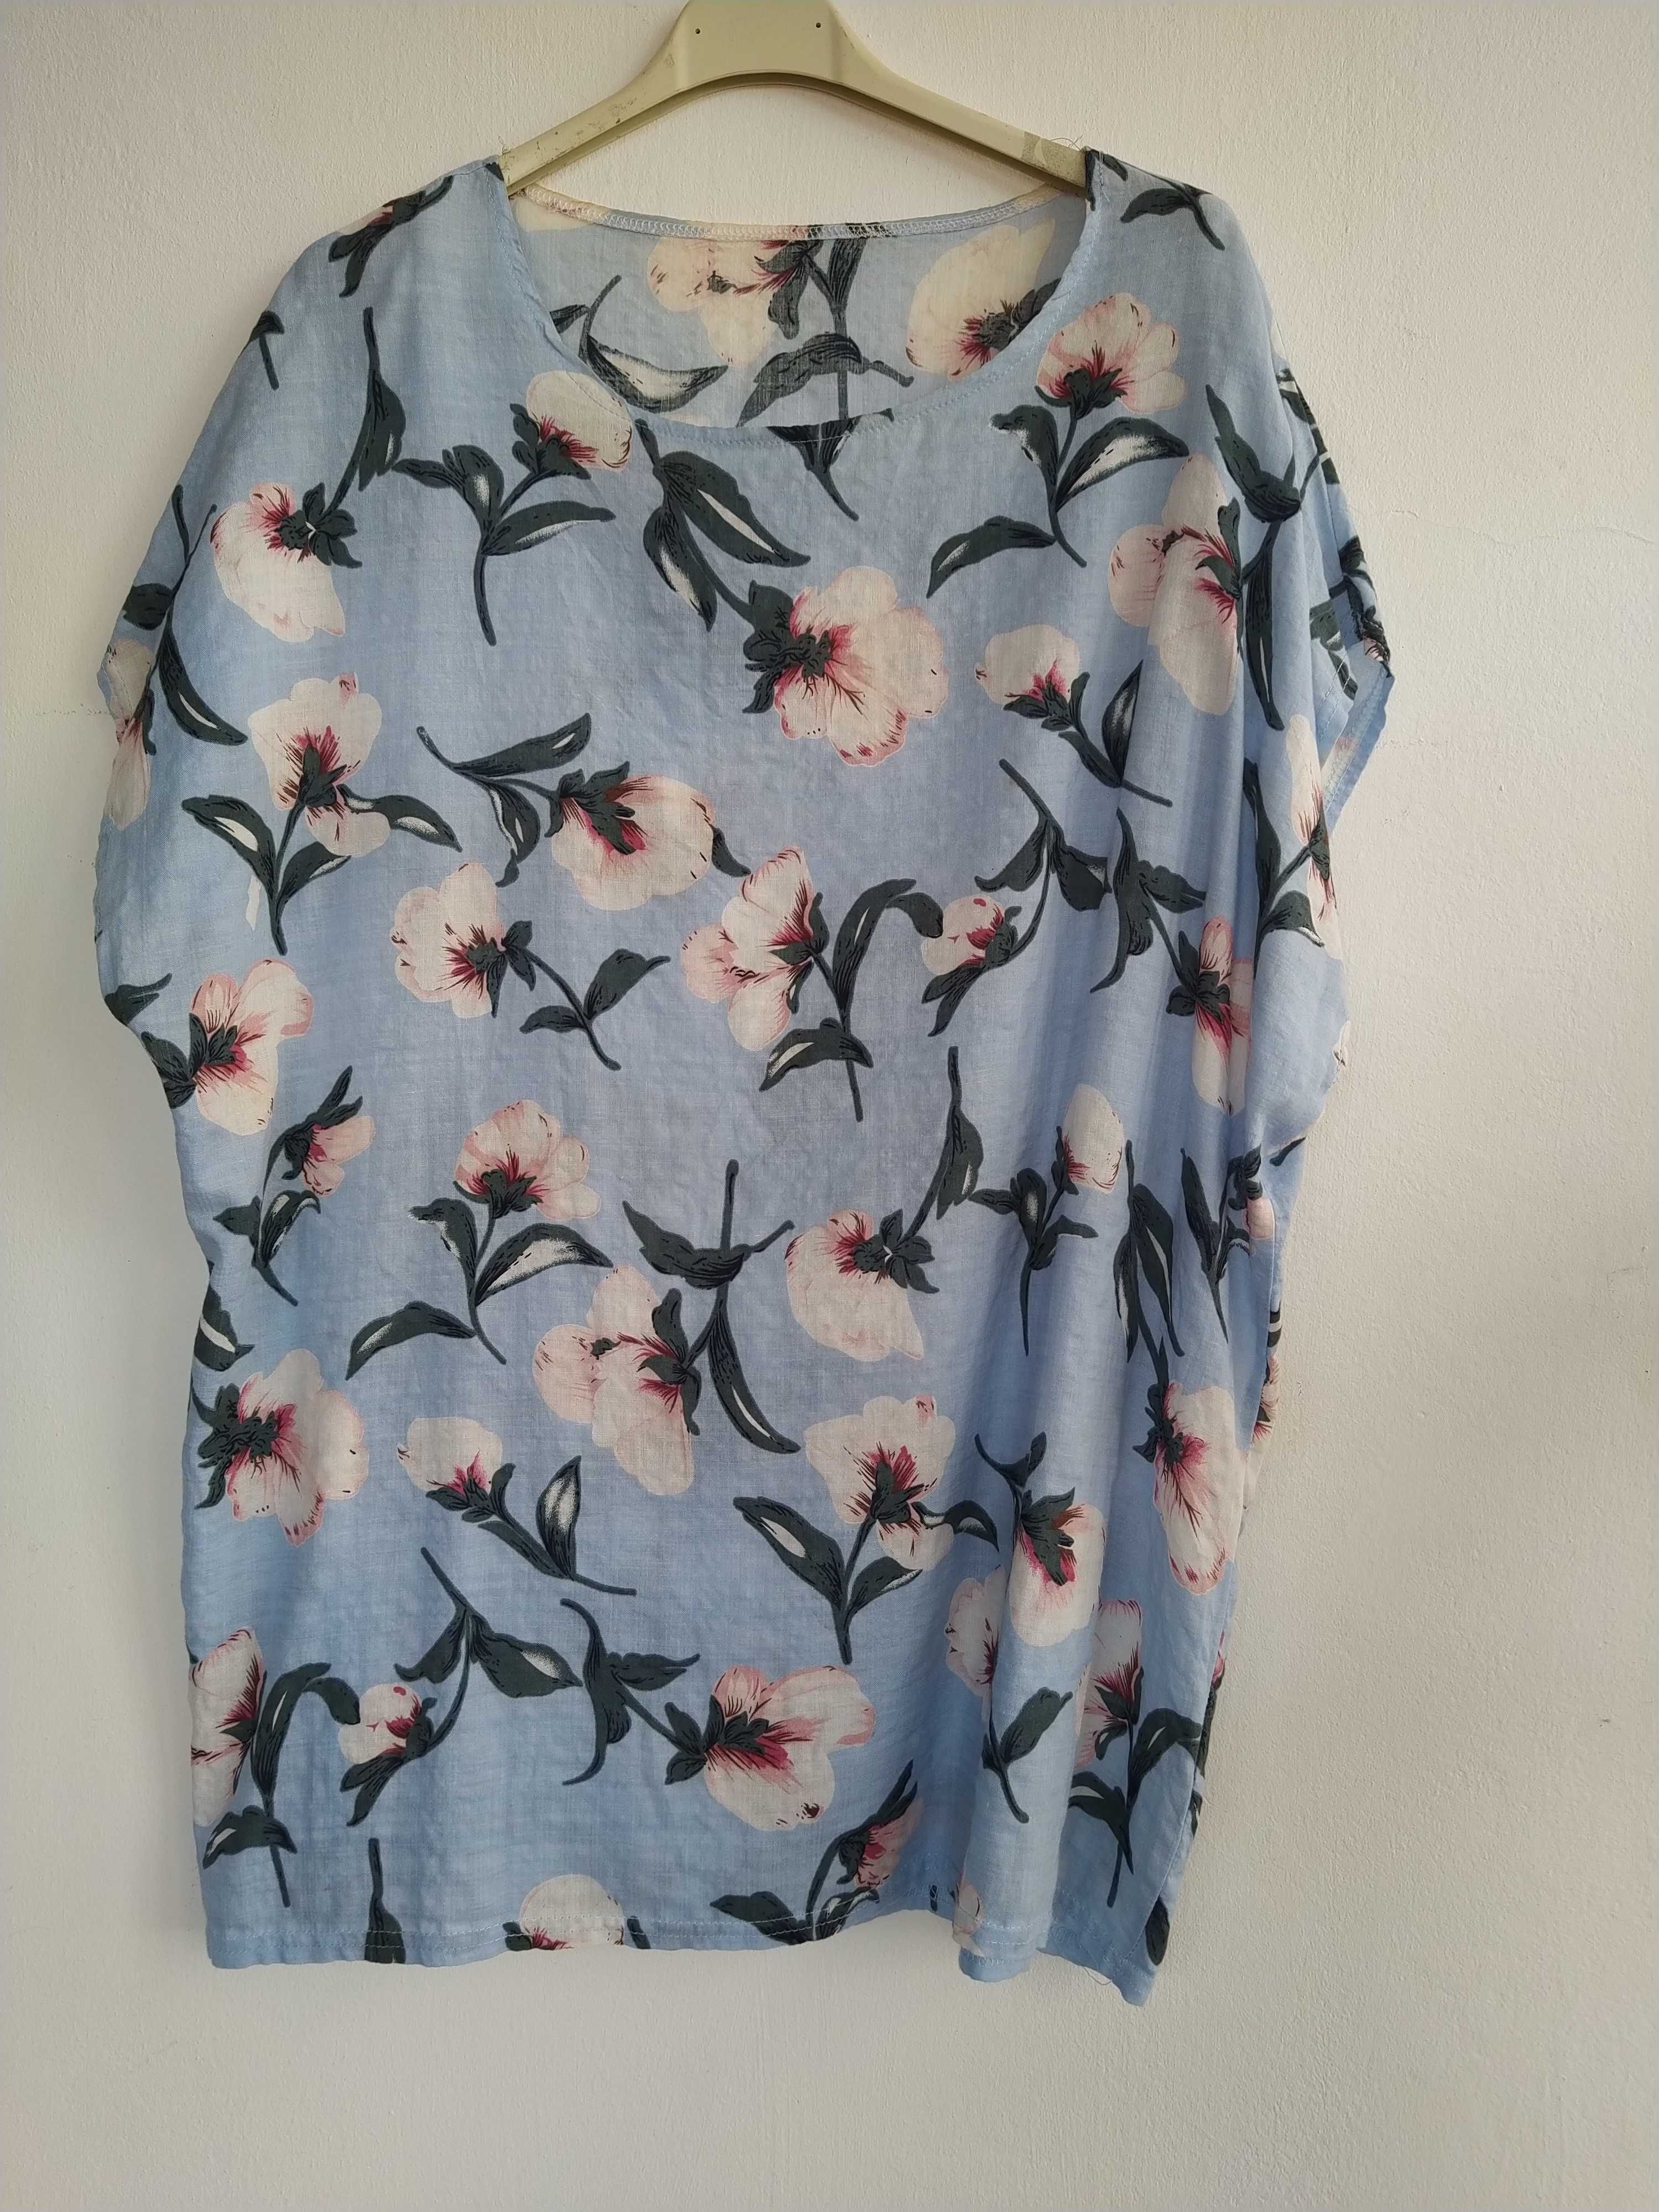 Blusa azul clara com flores - Tamanho XL/XXL